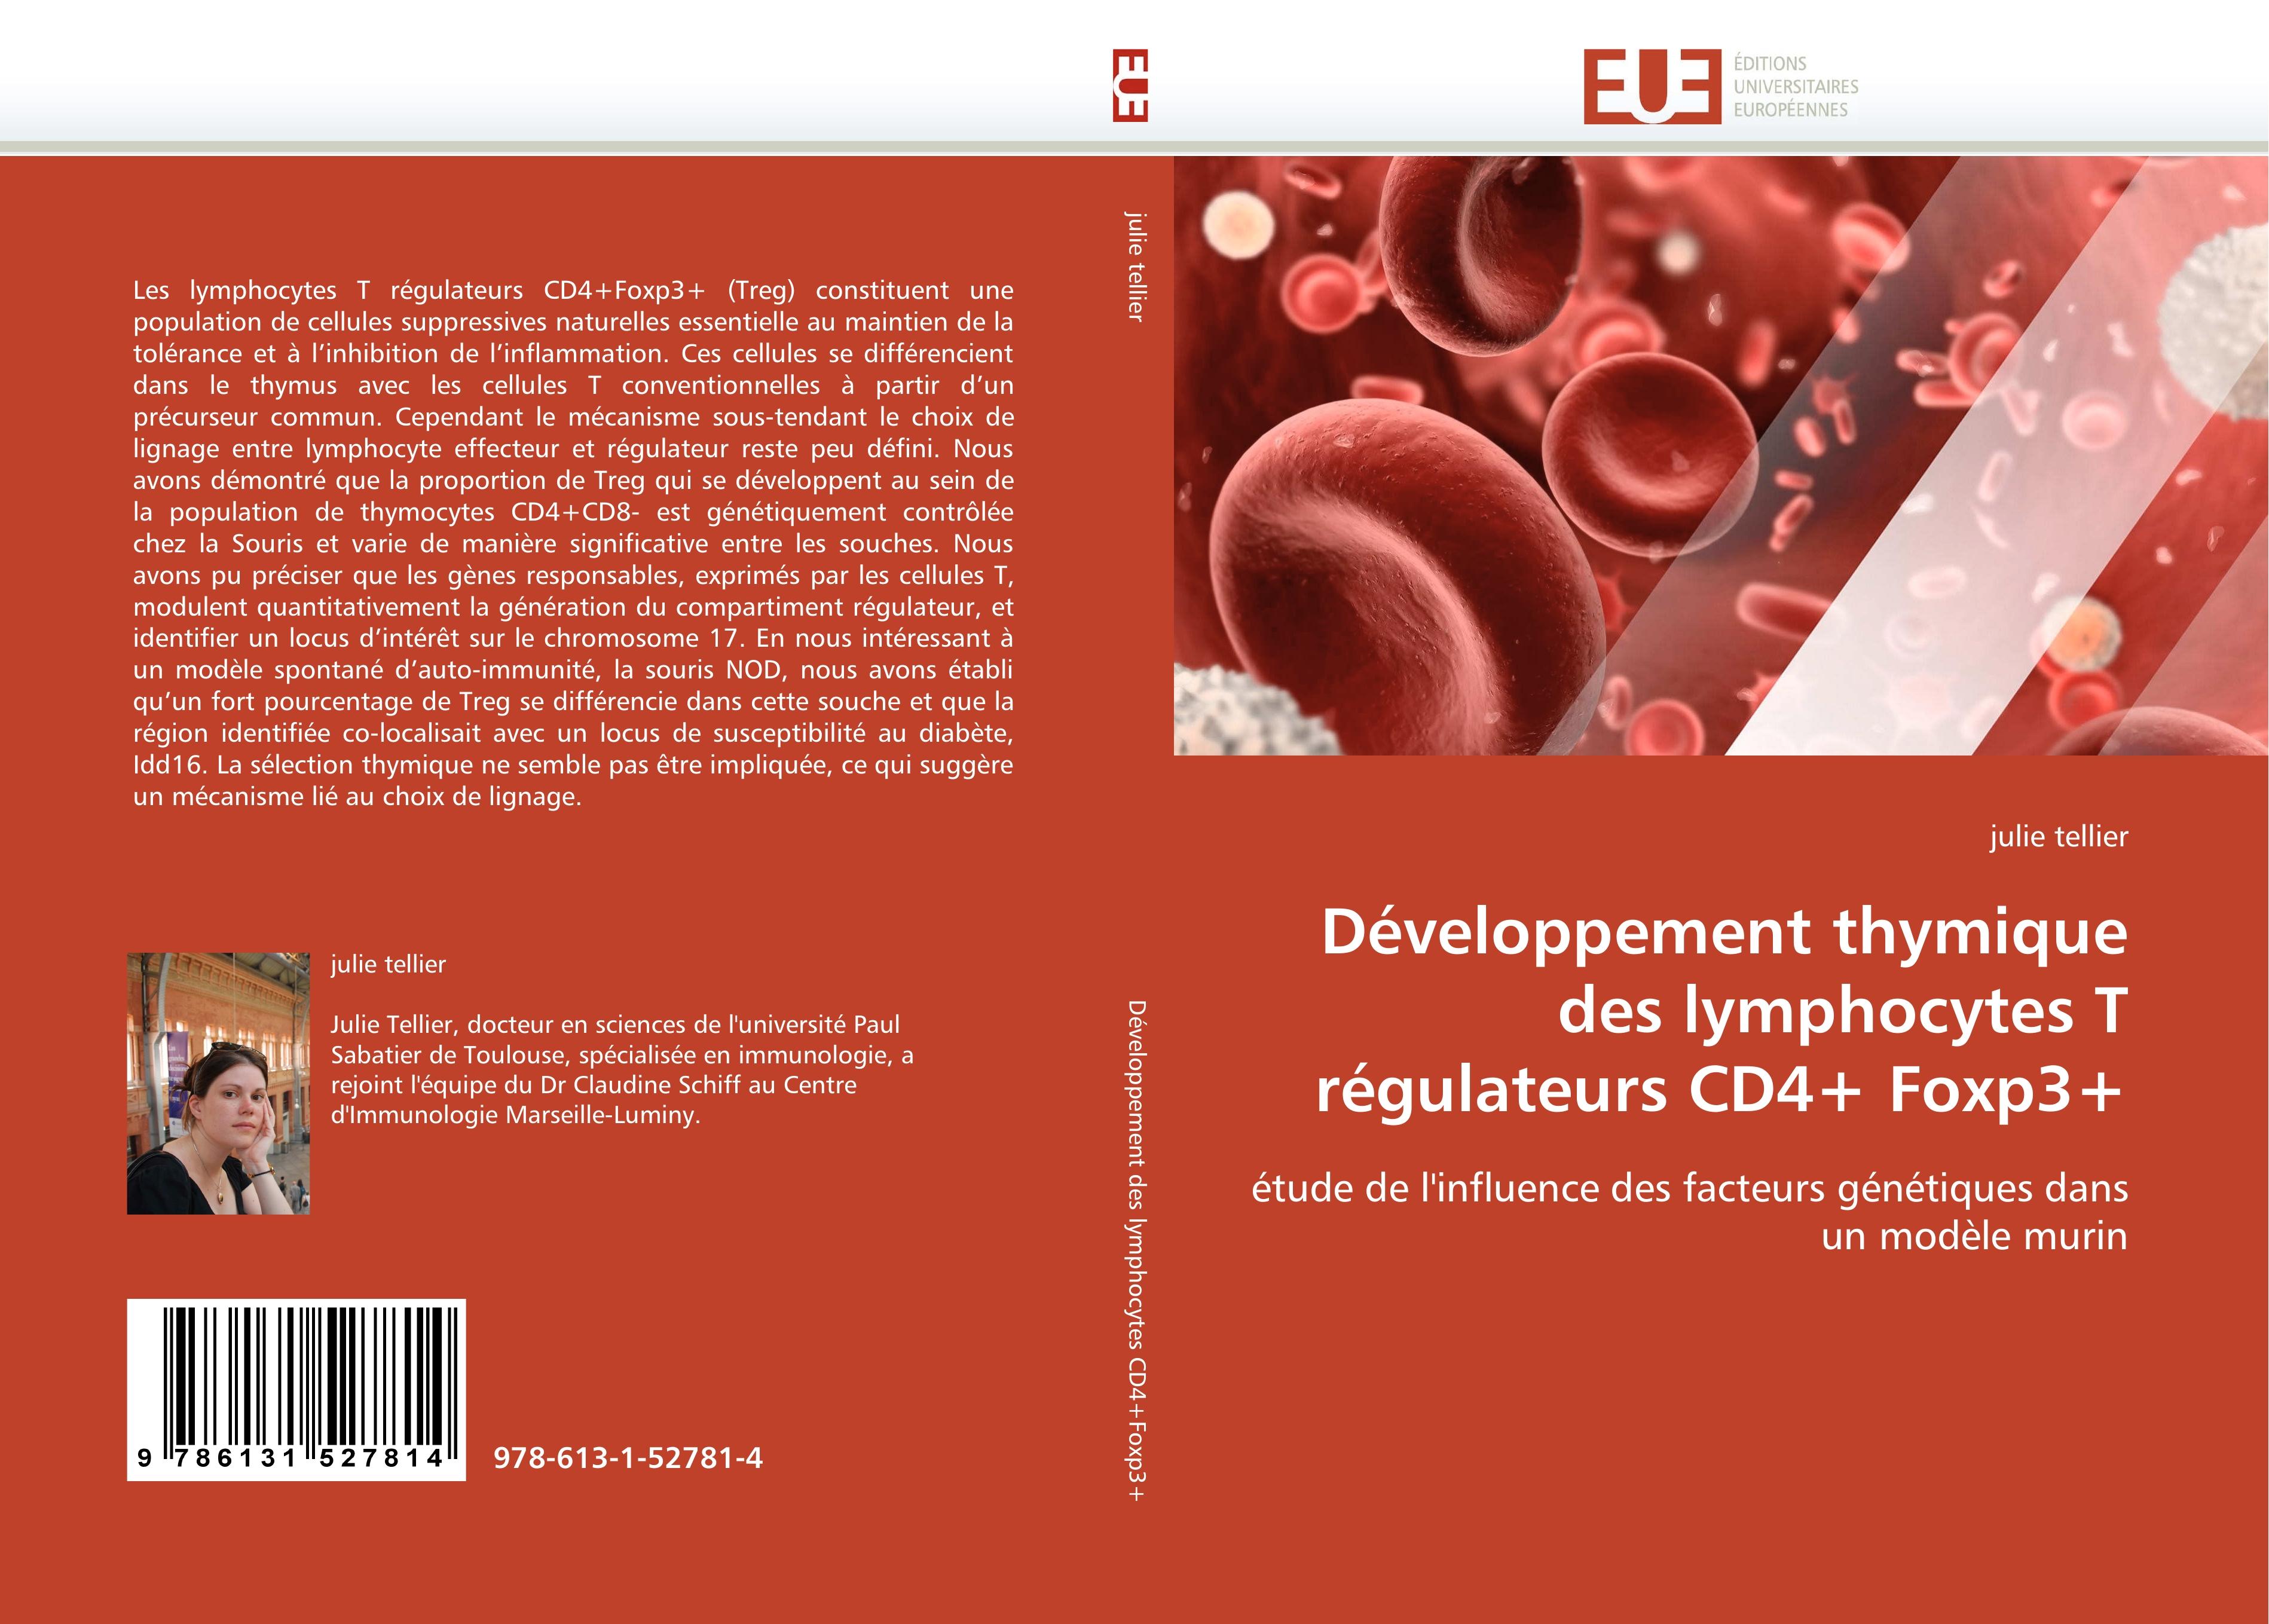 Développement thymique des lymphocytes T régulateurs CD4+ Foxp3+ - julie tellier